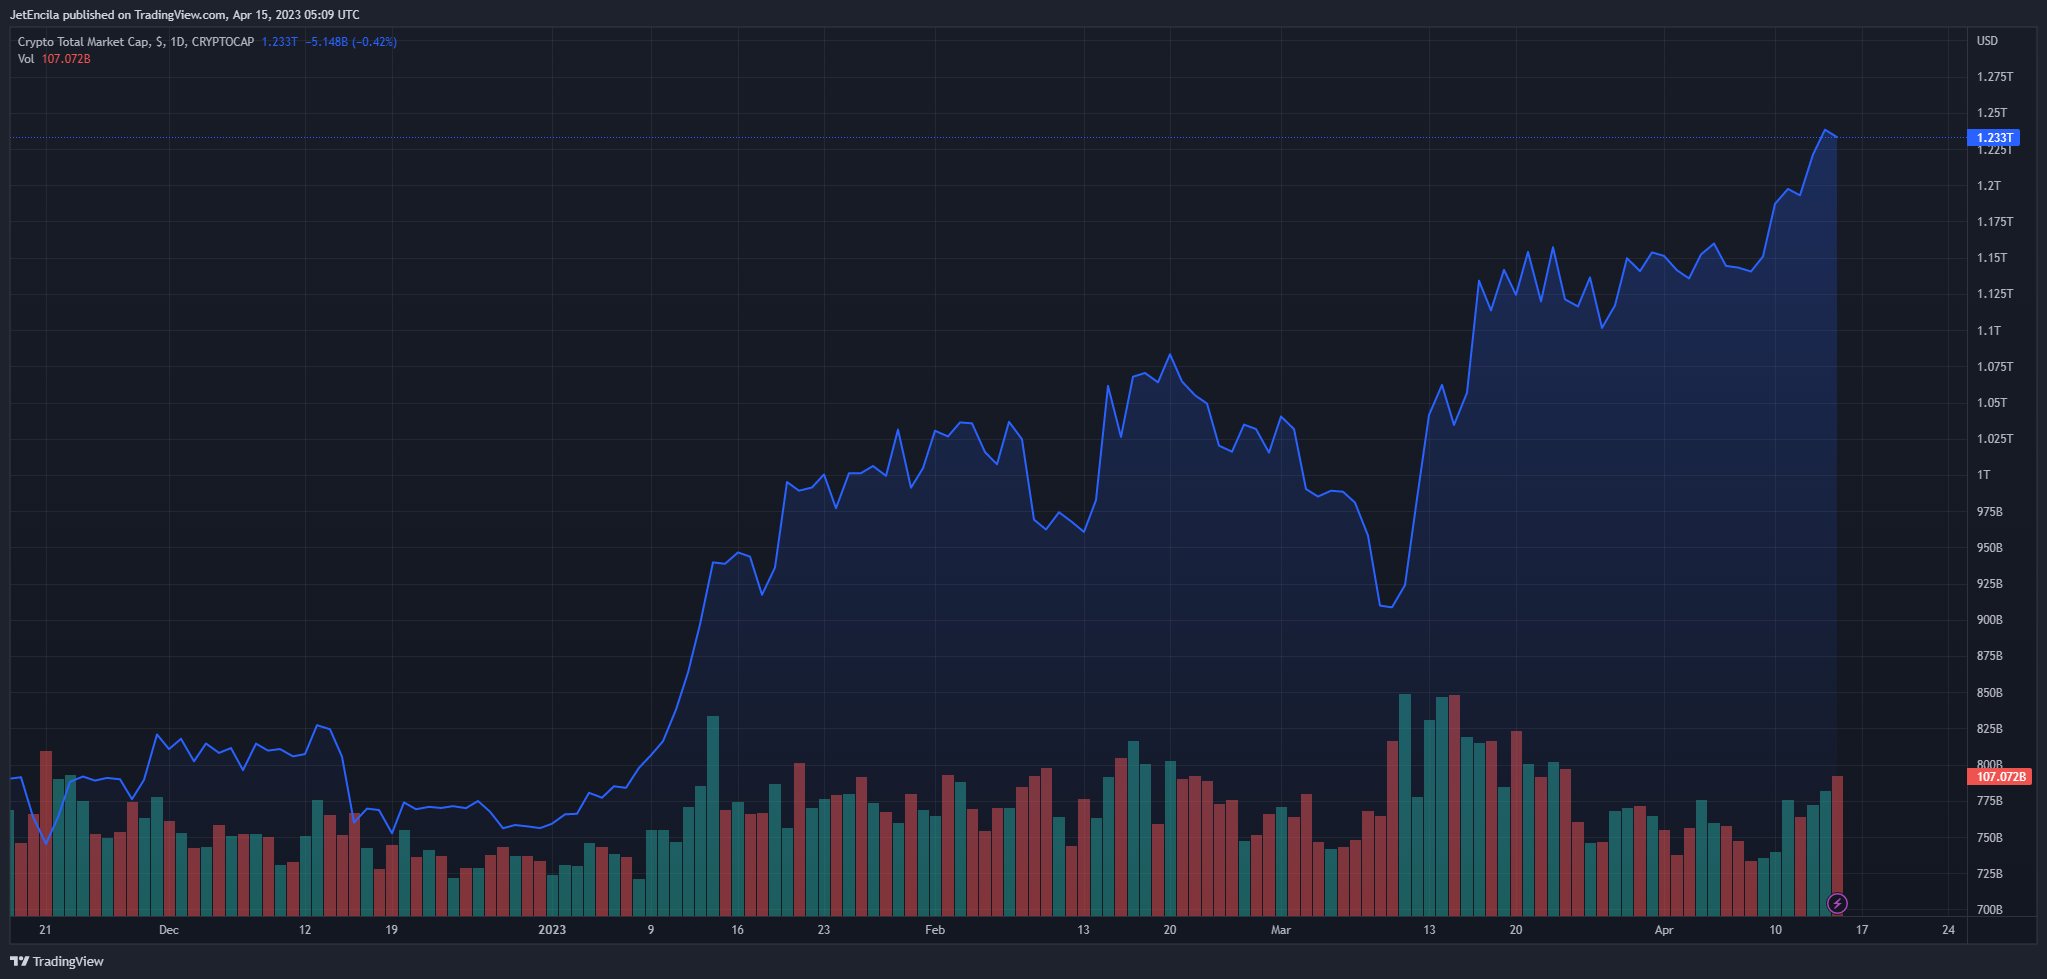 Tổng vốn hóa thị trường tiền điện tử giảm và hiện đang ở mức 1,23 nghìn tỷ đô la trên biểu đồ cuối tuần trên TradingView.com.